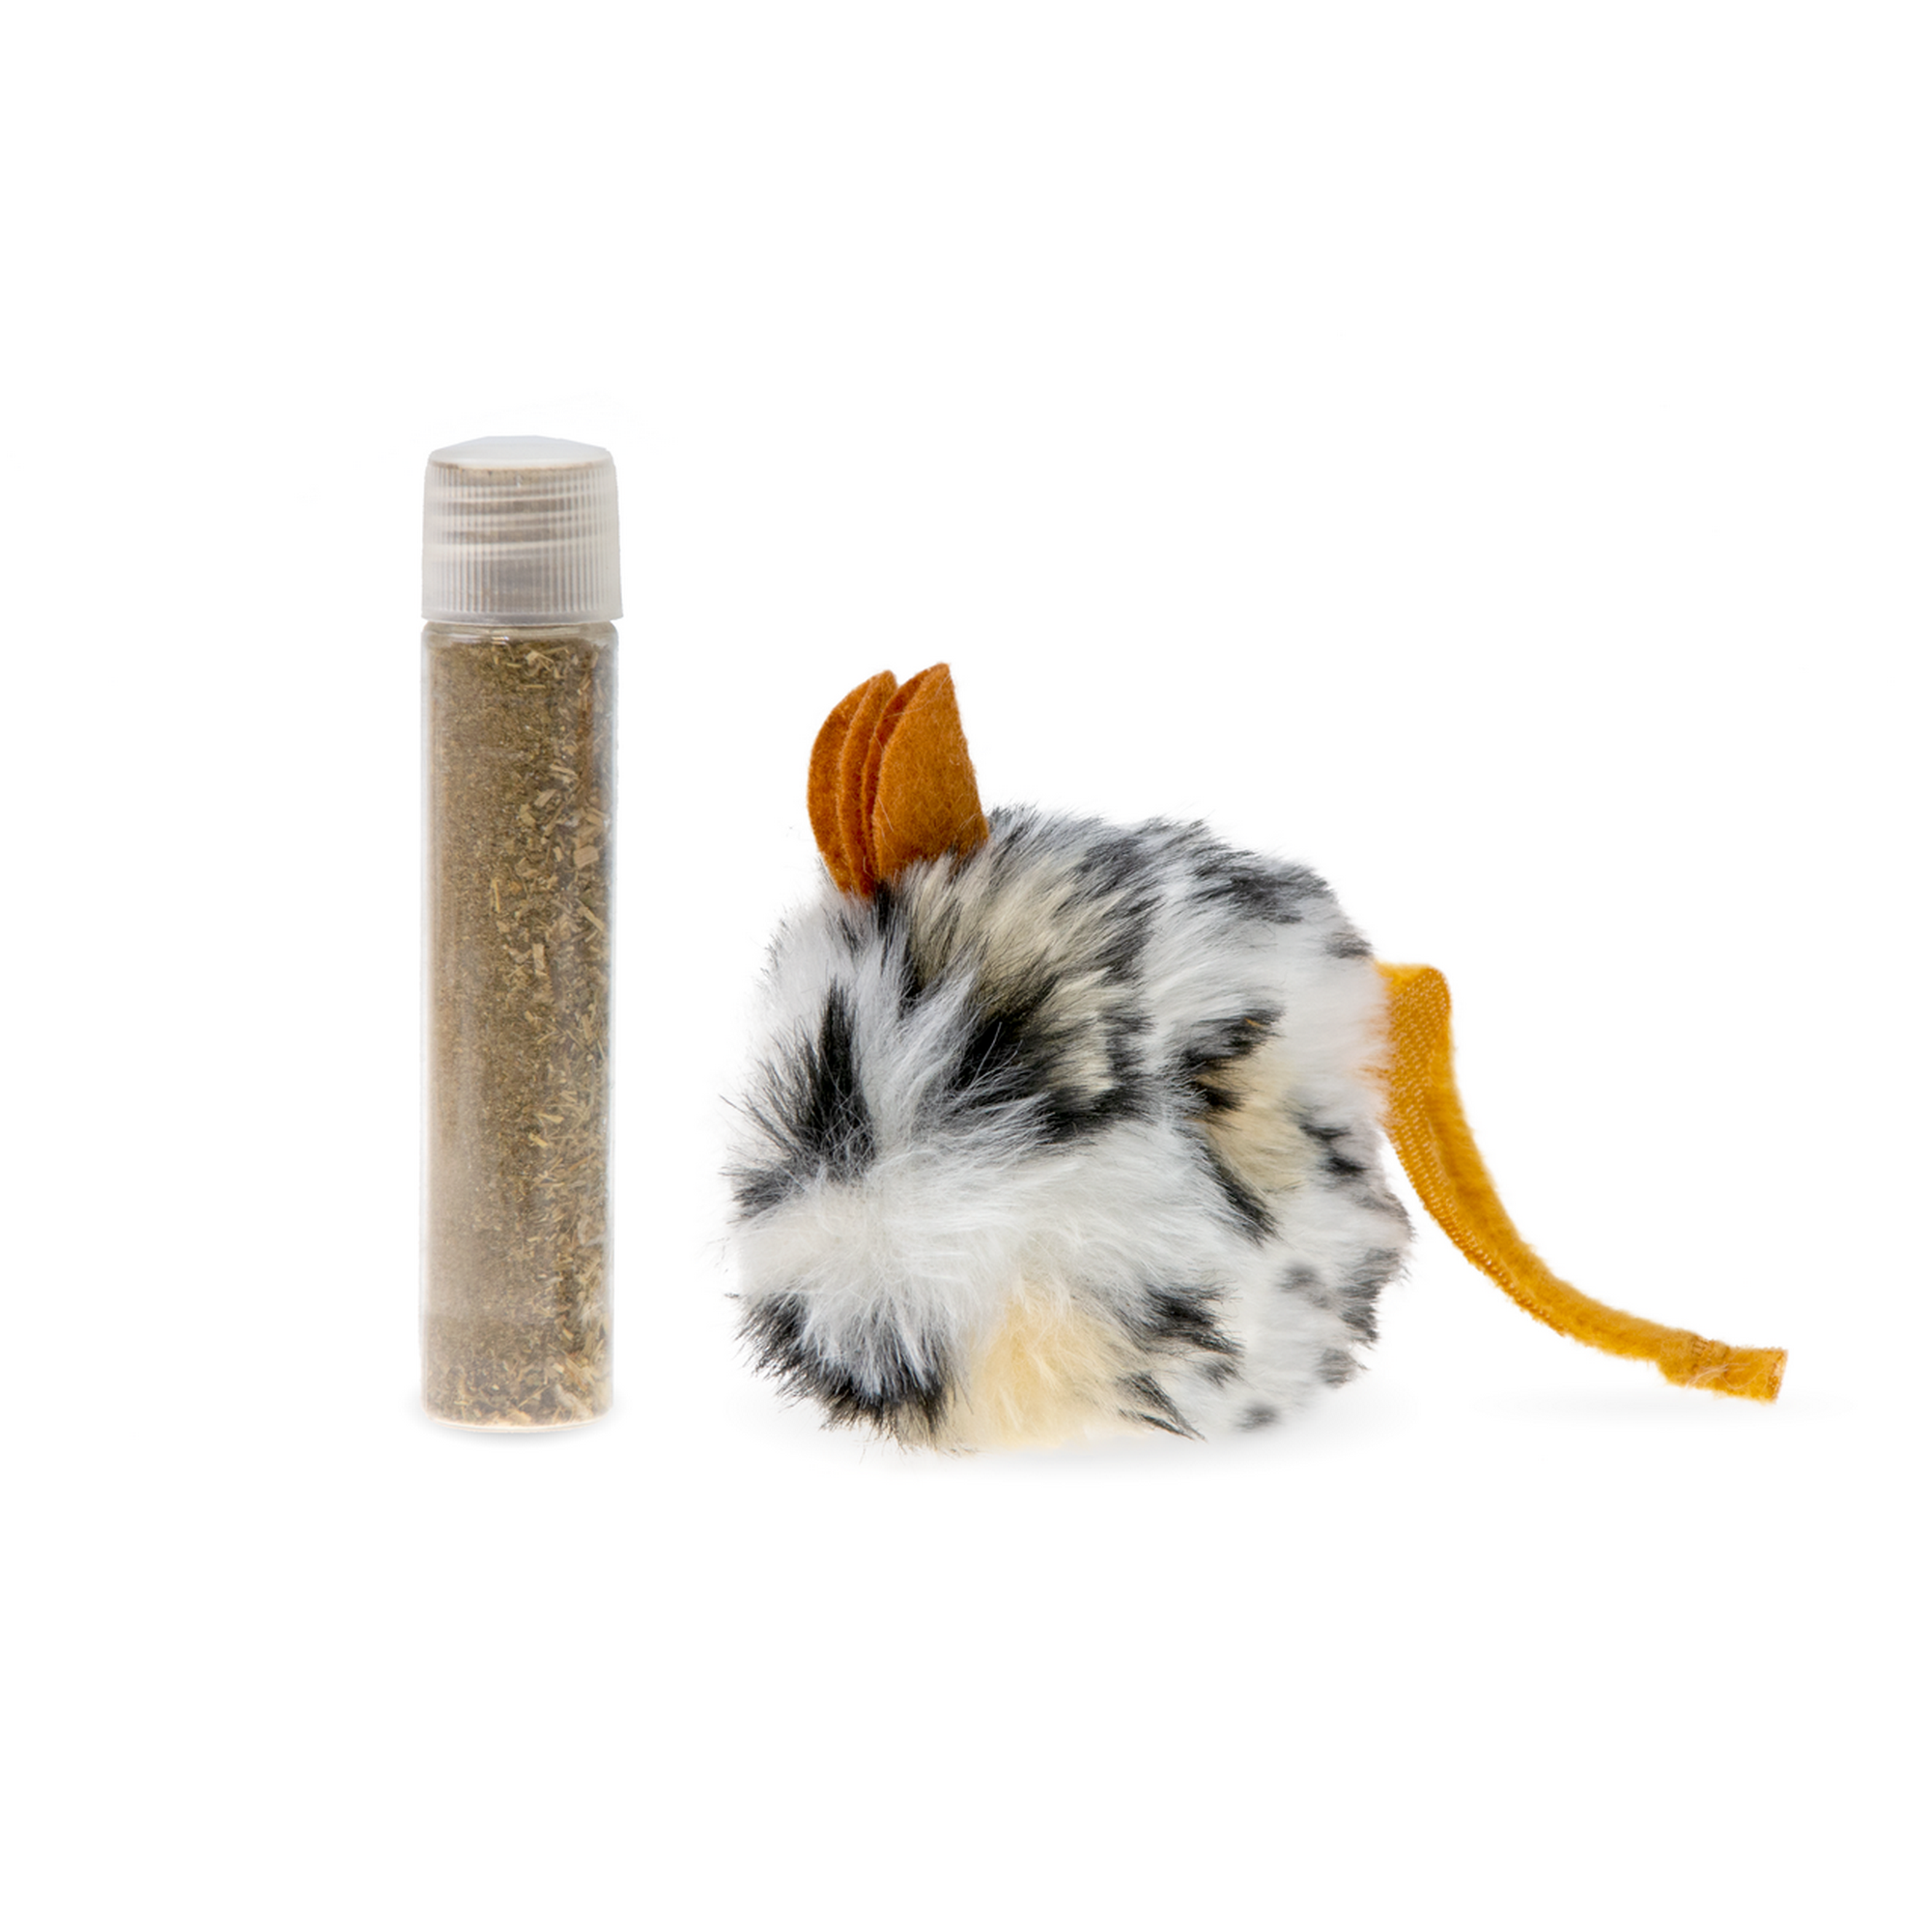 Katzenspielzeug Plüschmaus beige mit Catnip 20 cm + product picture